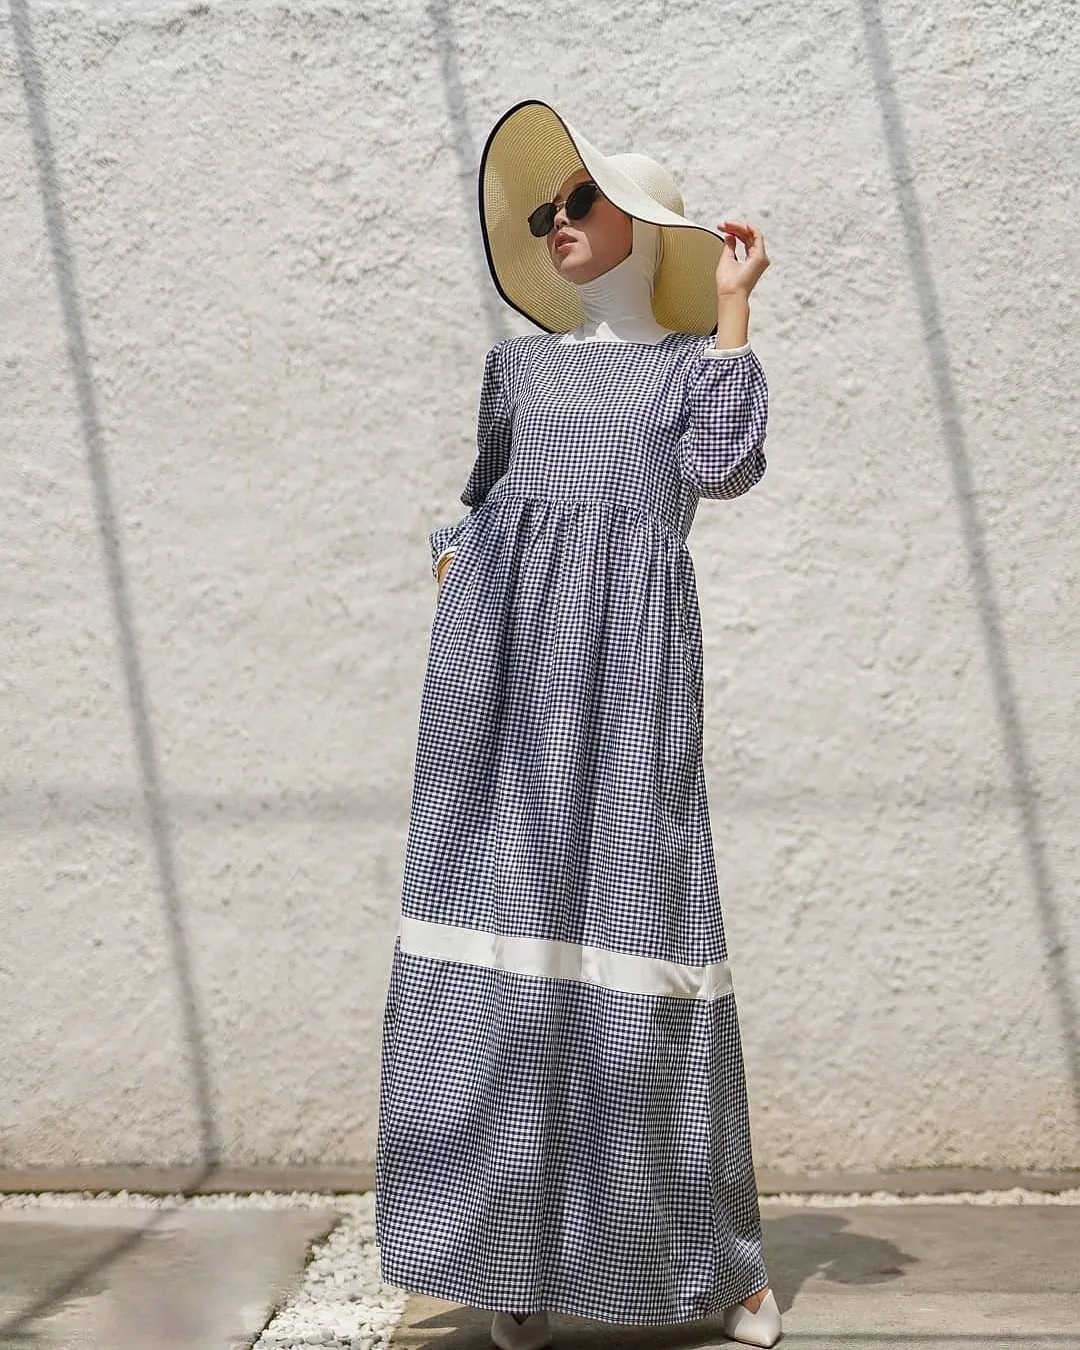 Baju Muslim Modern MASAYU DRESS HS KATUN MIX MOSSCRAPE Gamis Wanita Gamis Wanita Terbaru 2021 Gamis Murah Meriah Promo Gamis Remaja Gamis Muslim Kondangan Gamis Polos BEST SELLER